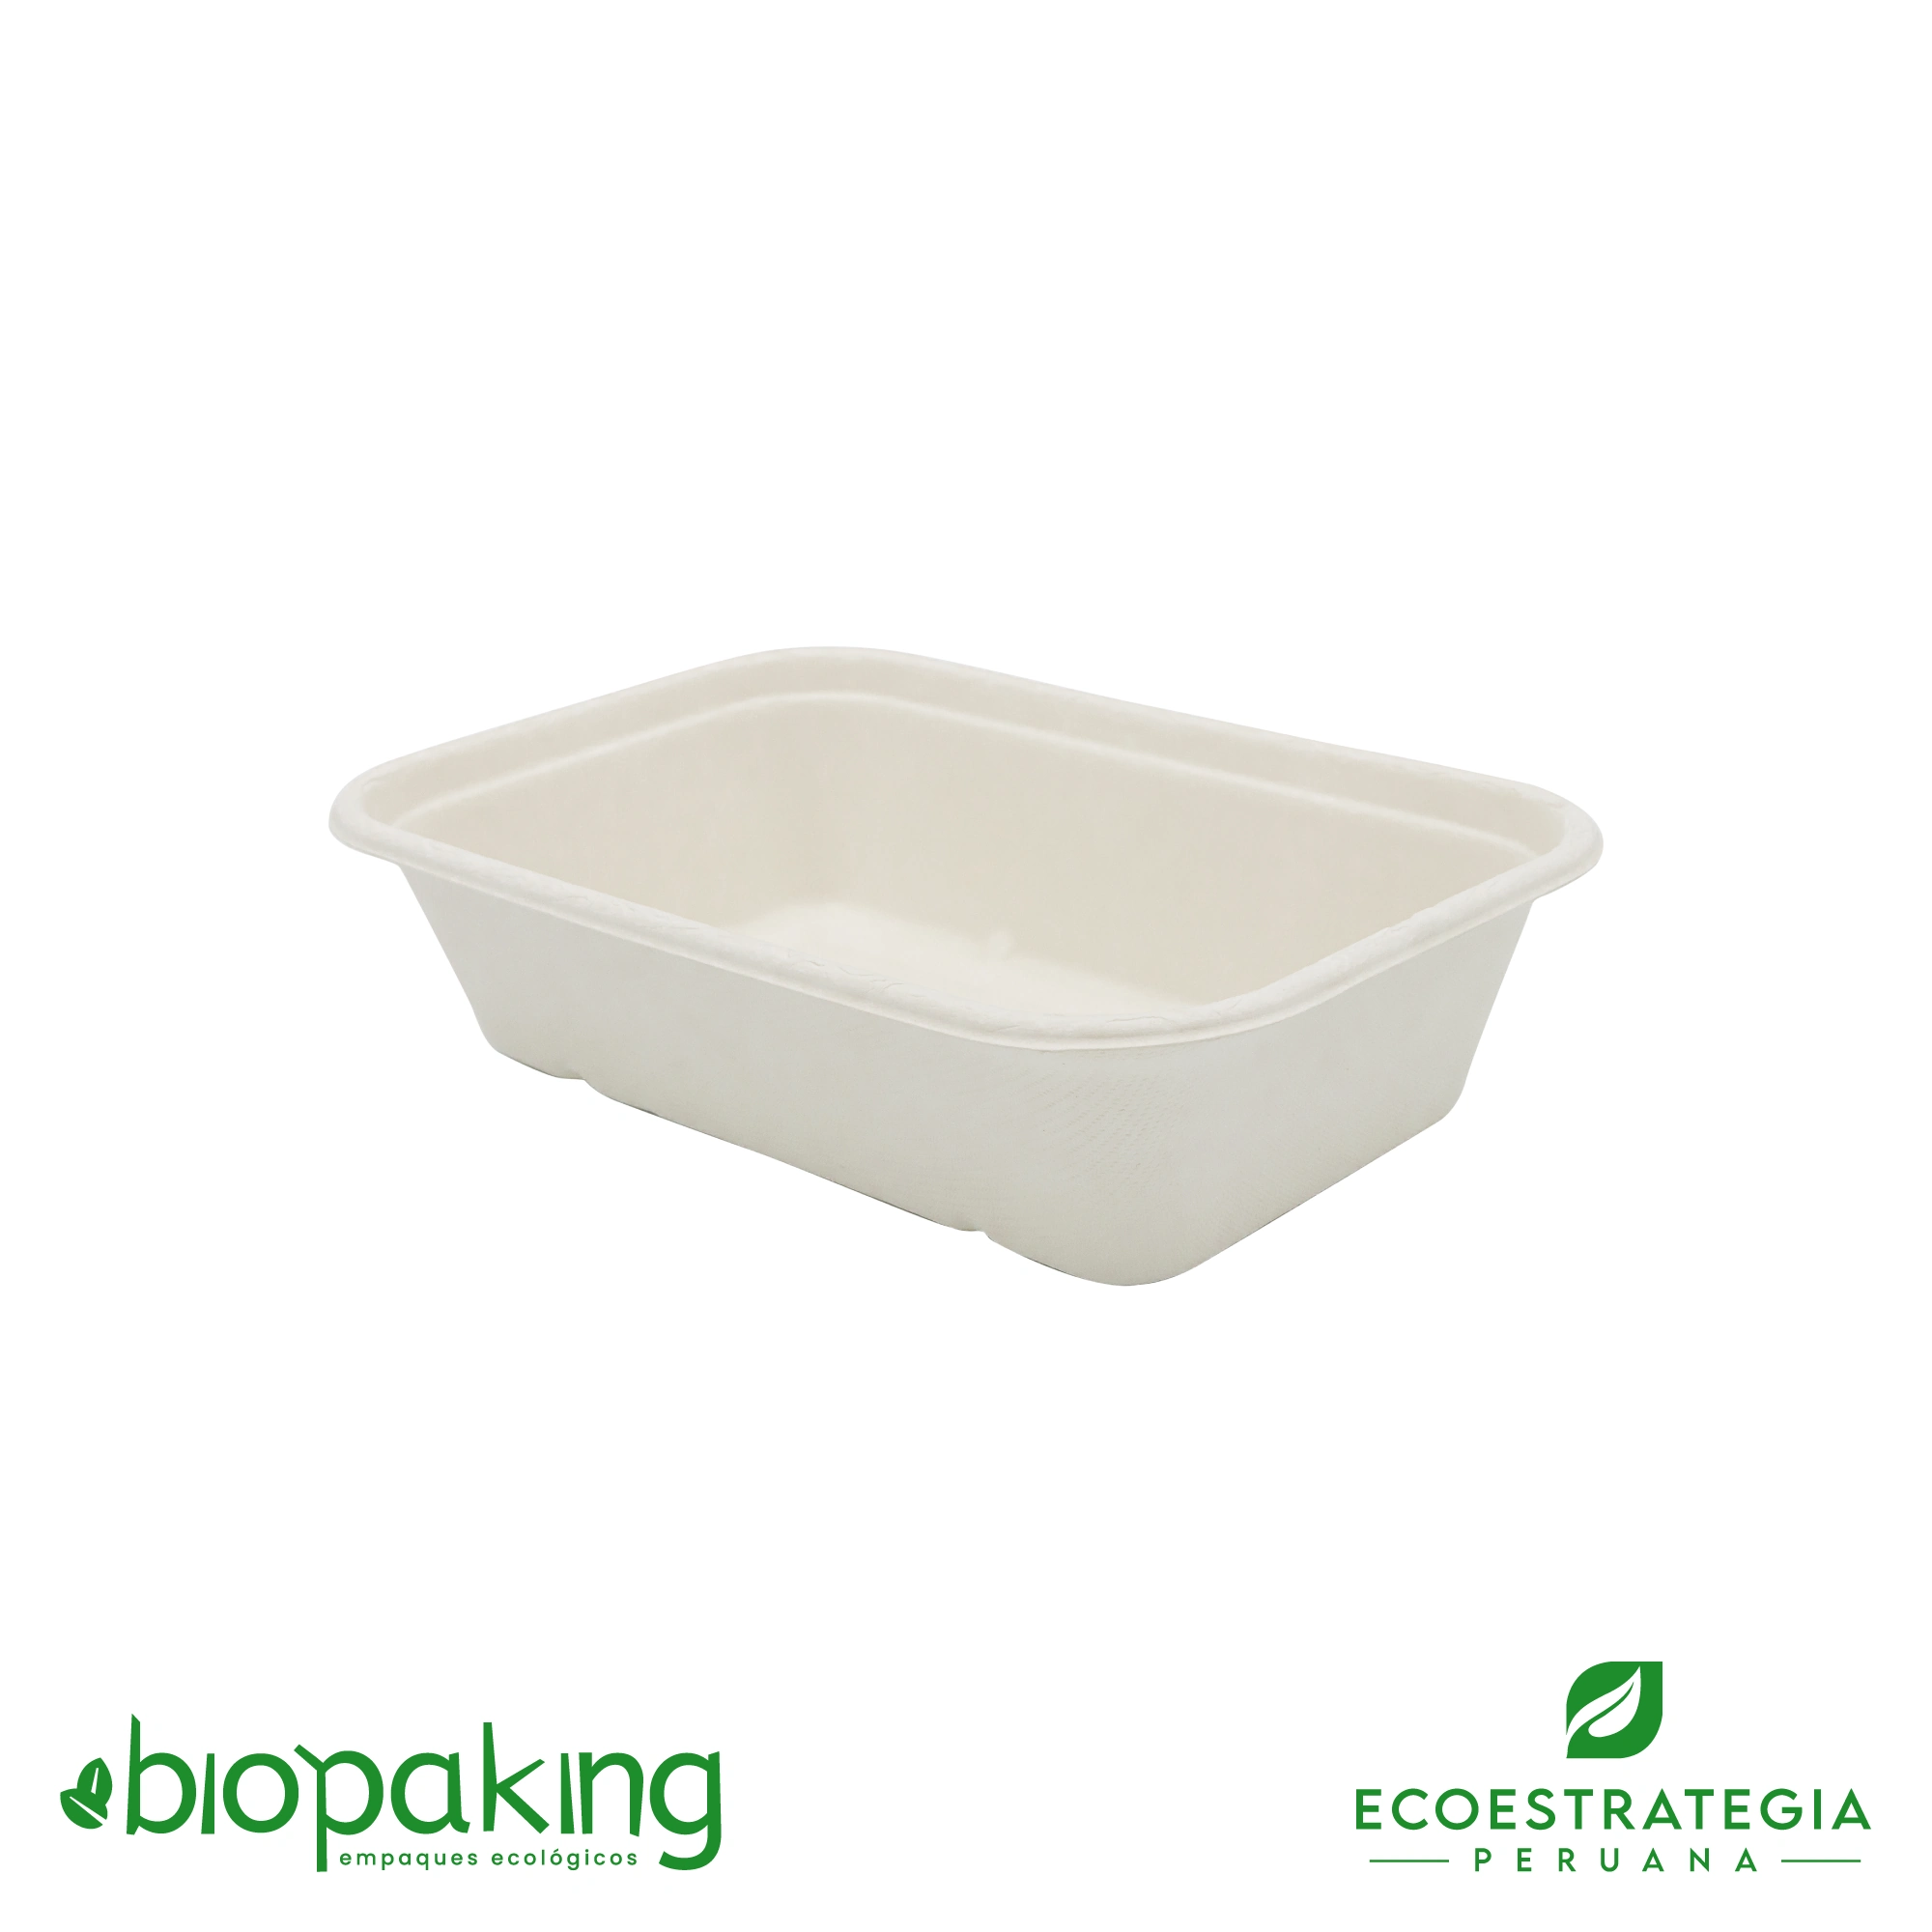 El modelo EP-CA1000 es una bandeja biodegradable color blanco y de un peso de 32gr. Gracias a que esta  hecho a base del bagazo de la fibra de la caña de azúcar y a sus dimensiones, es perfecto para cualquier tipo de comidas frías y calientes